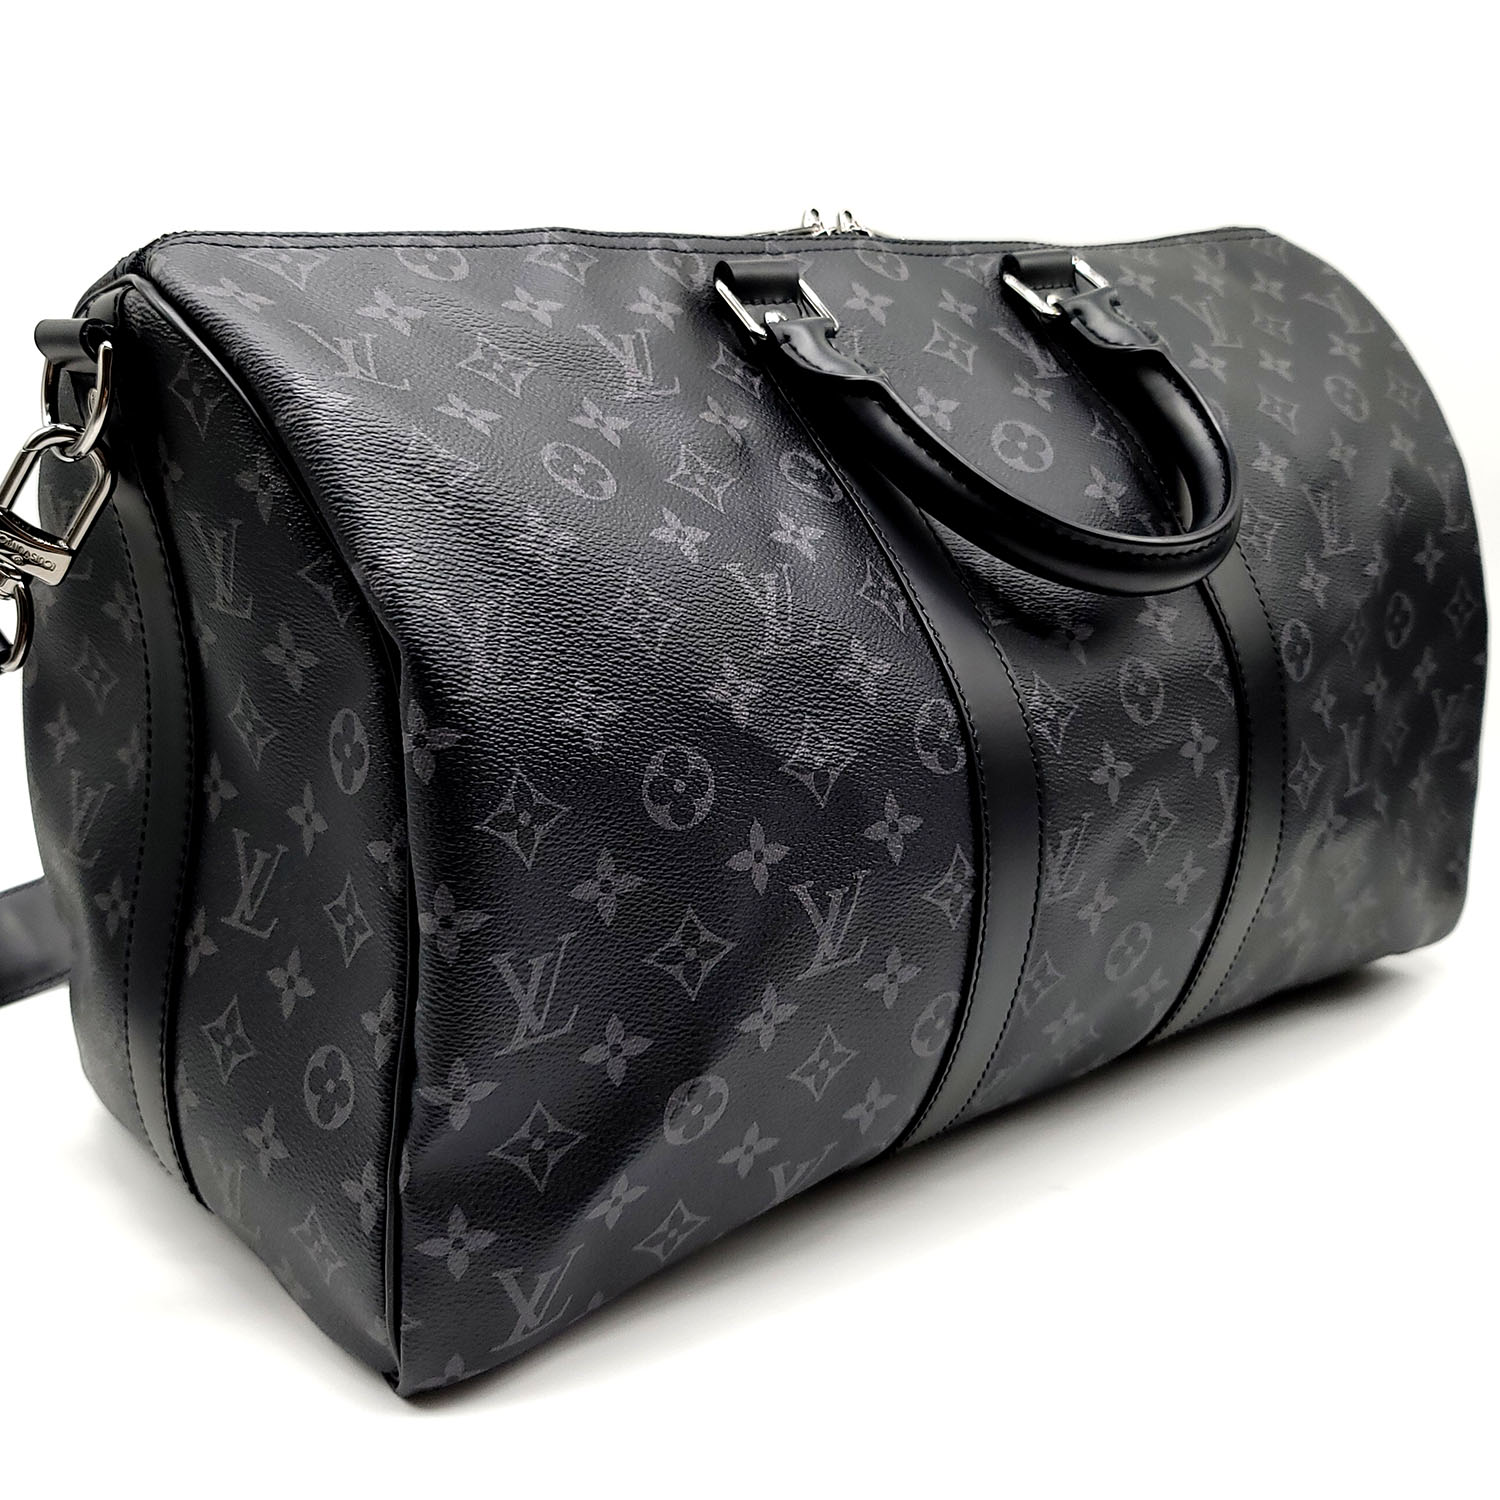 Authentic Louis Vuitton Monogram Eclipse Keepall Bandoulière 45 Travel Bag